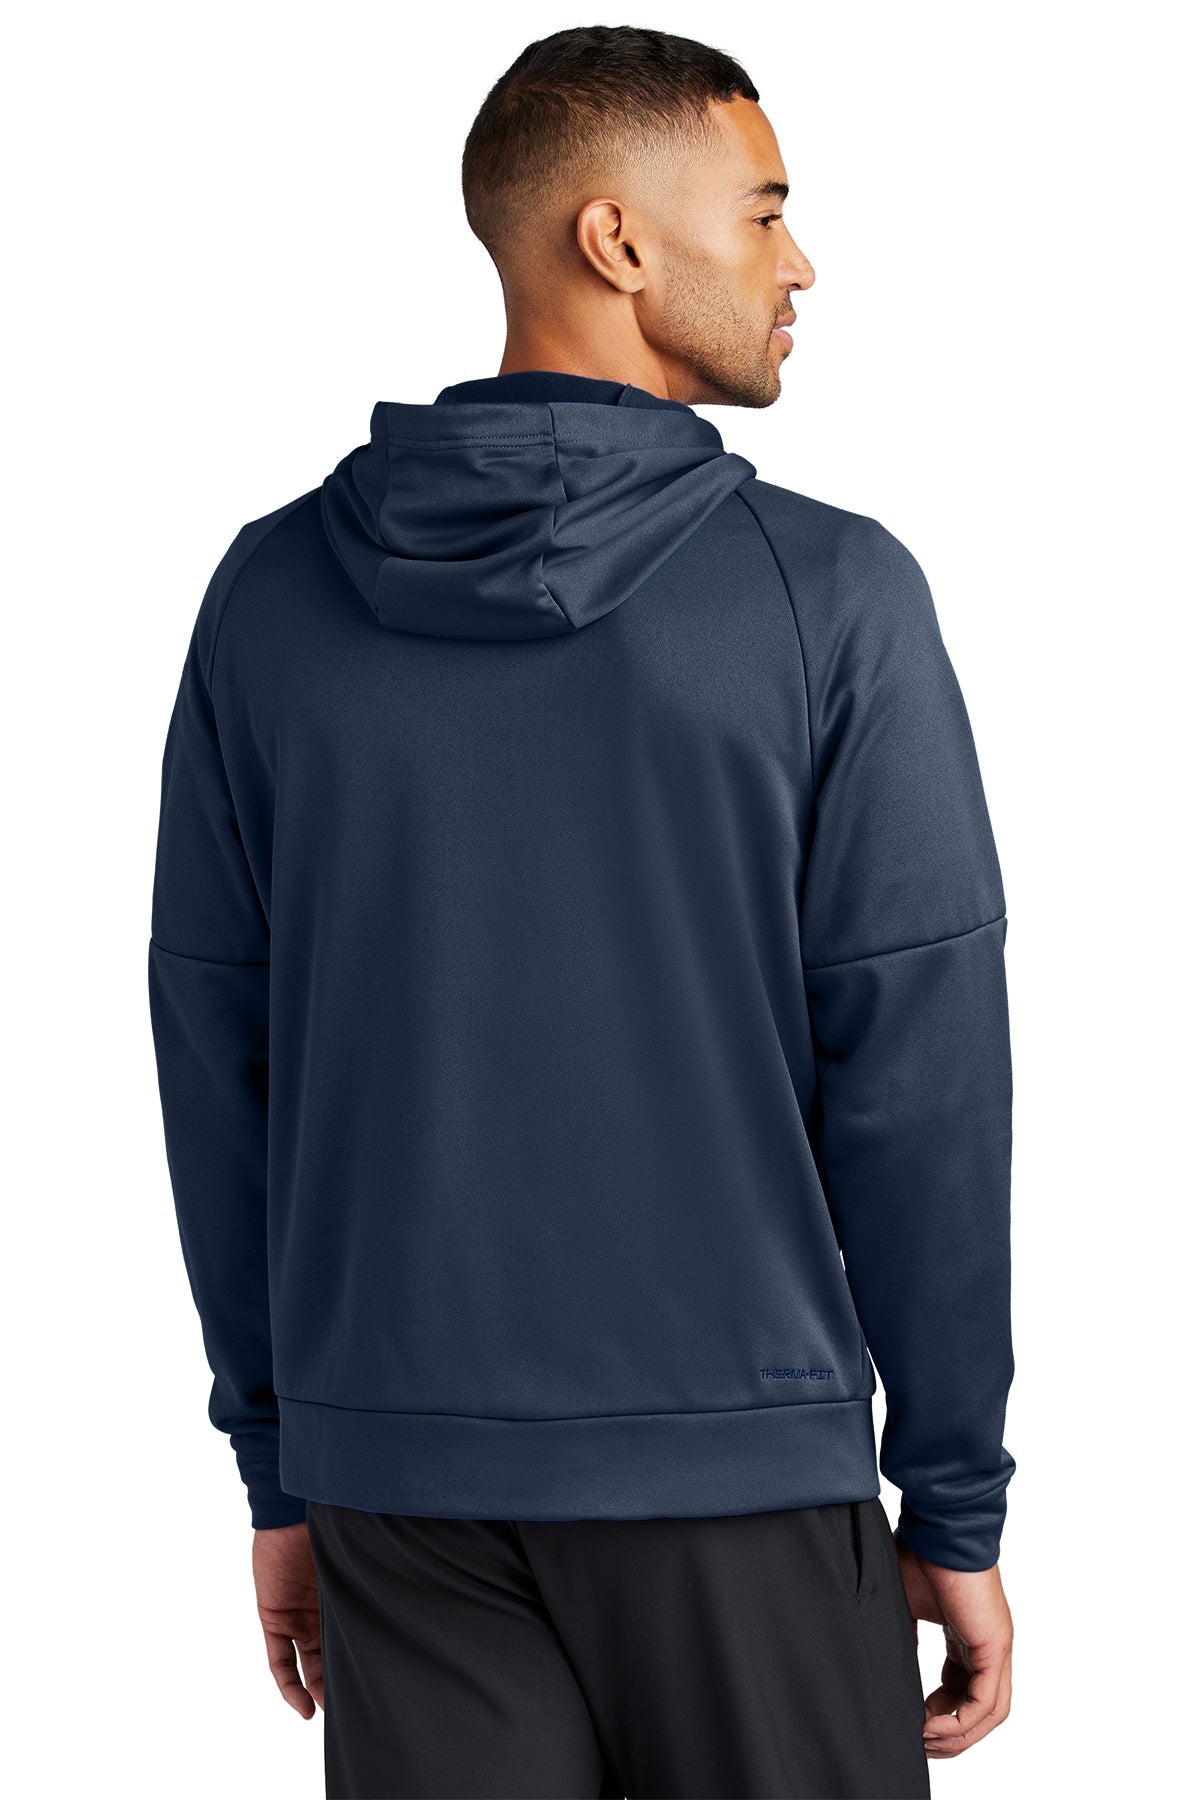 Nike Therma-FIT Pocket ZipUp Custom Hoodies, Navy